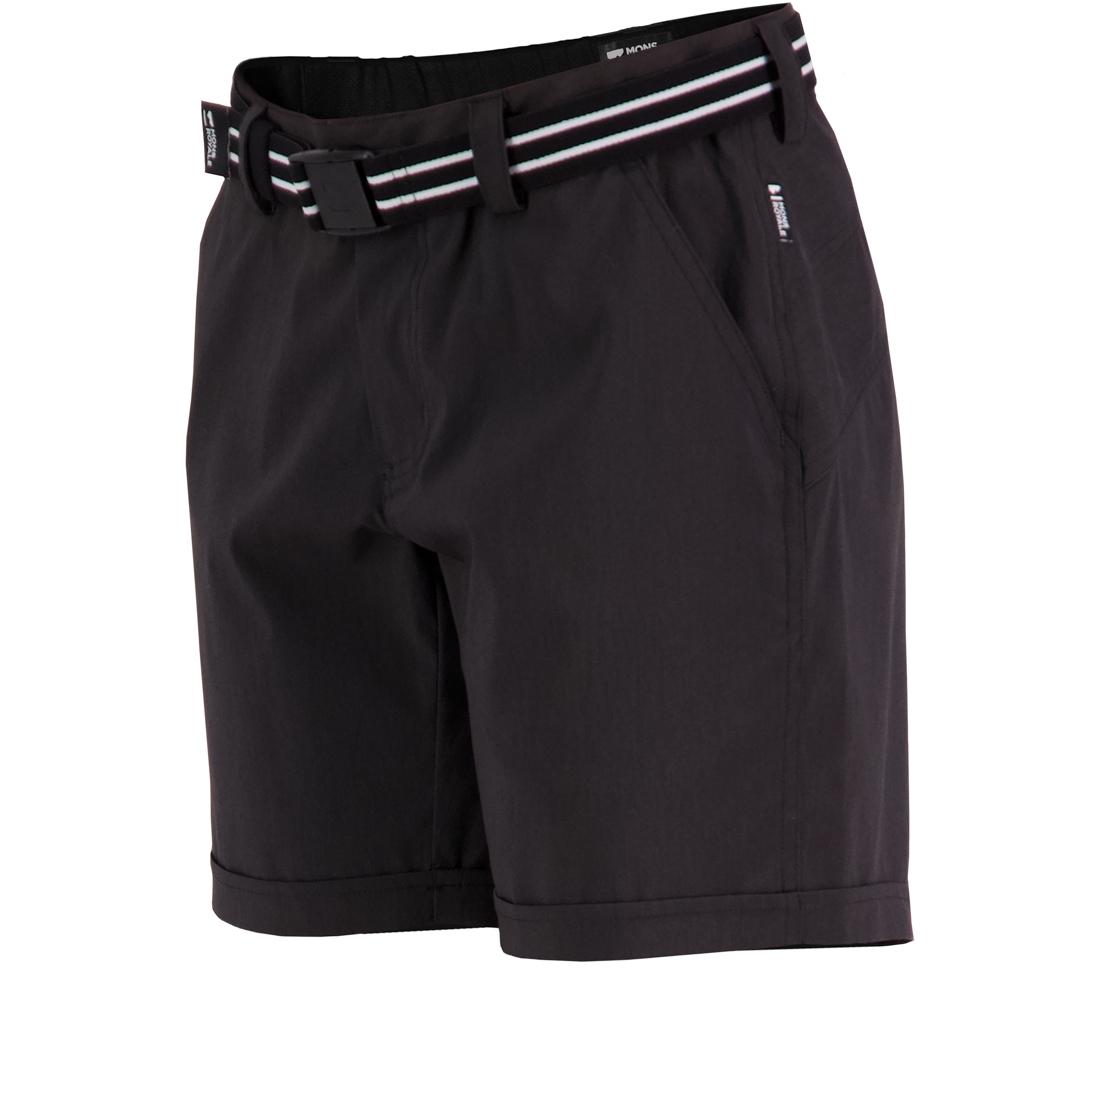 Produktbild von Mons Royale Drift Shorts Damen - schwarz